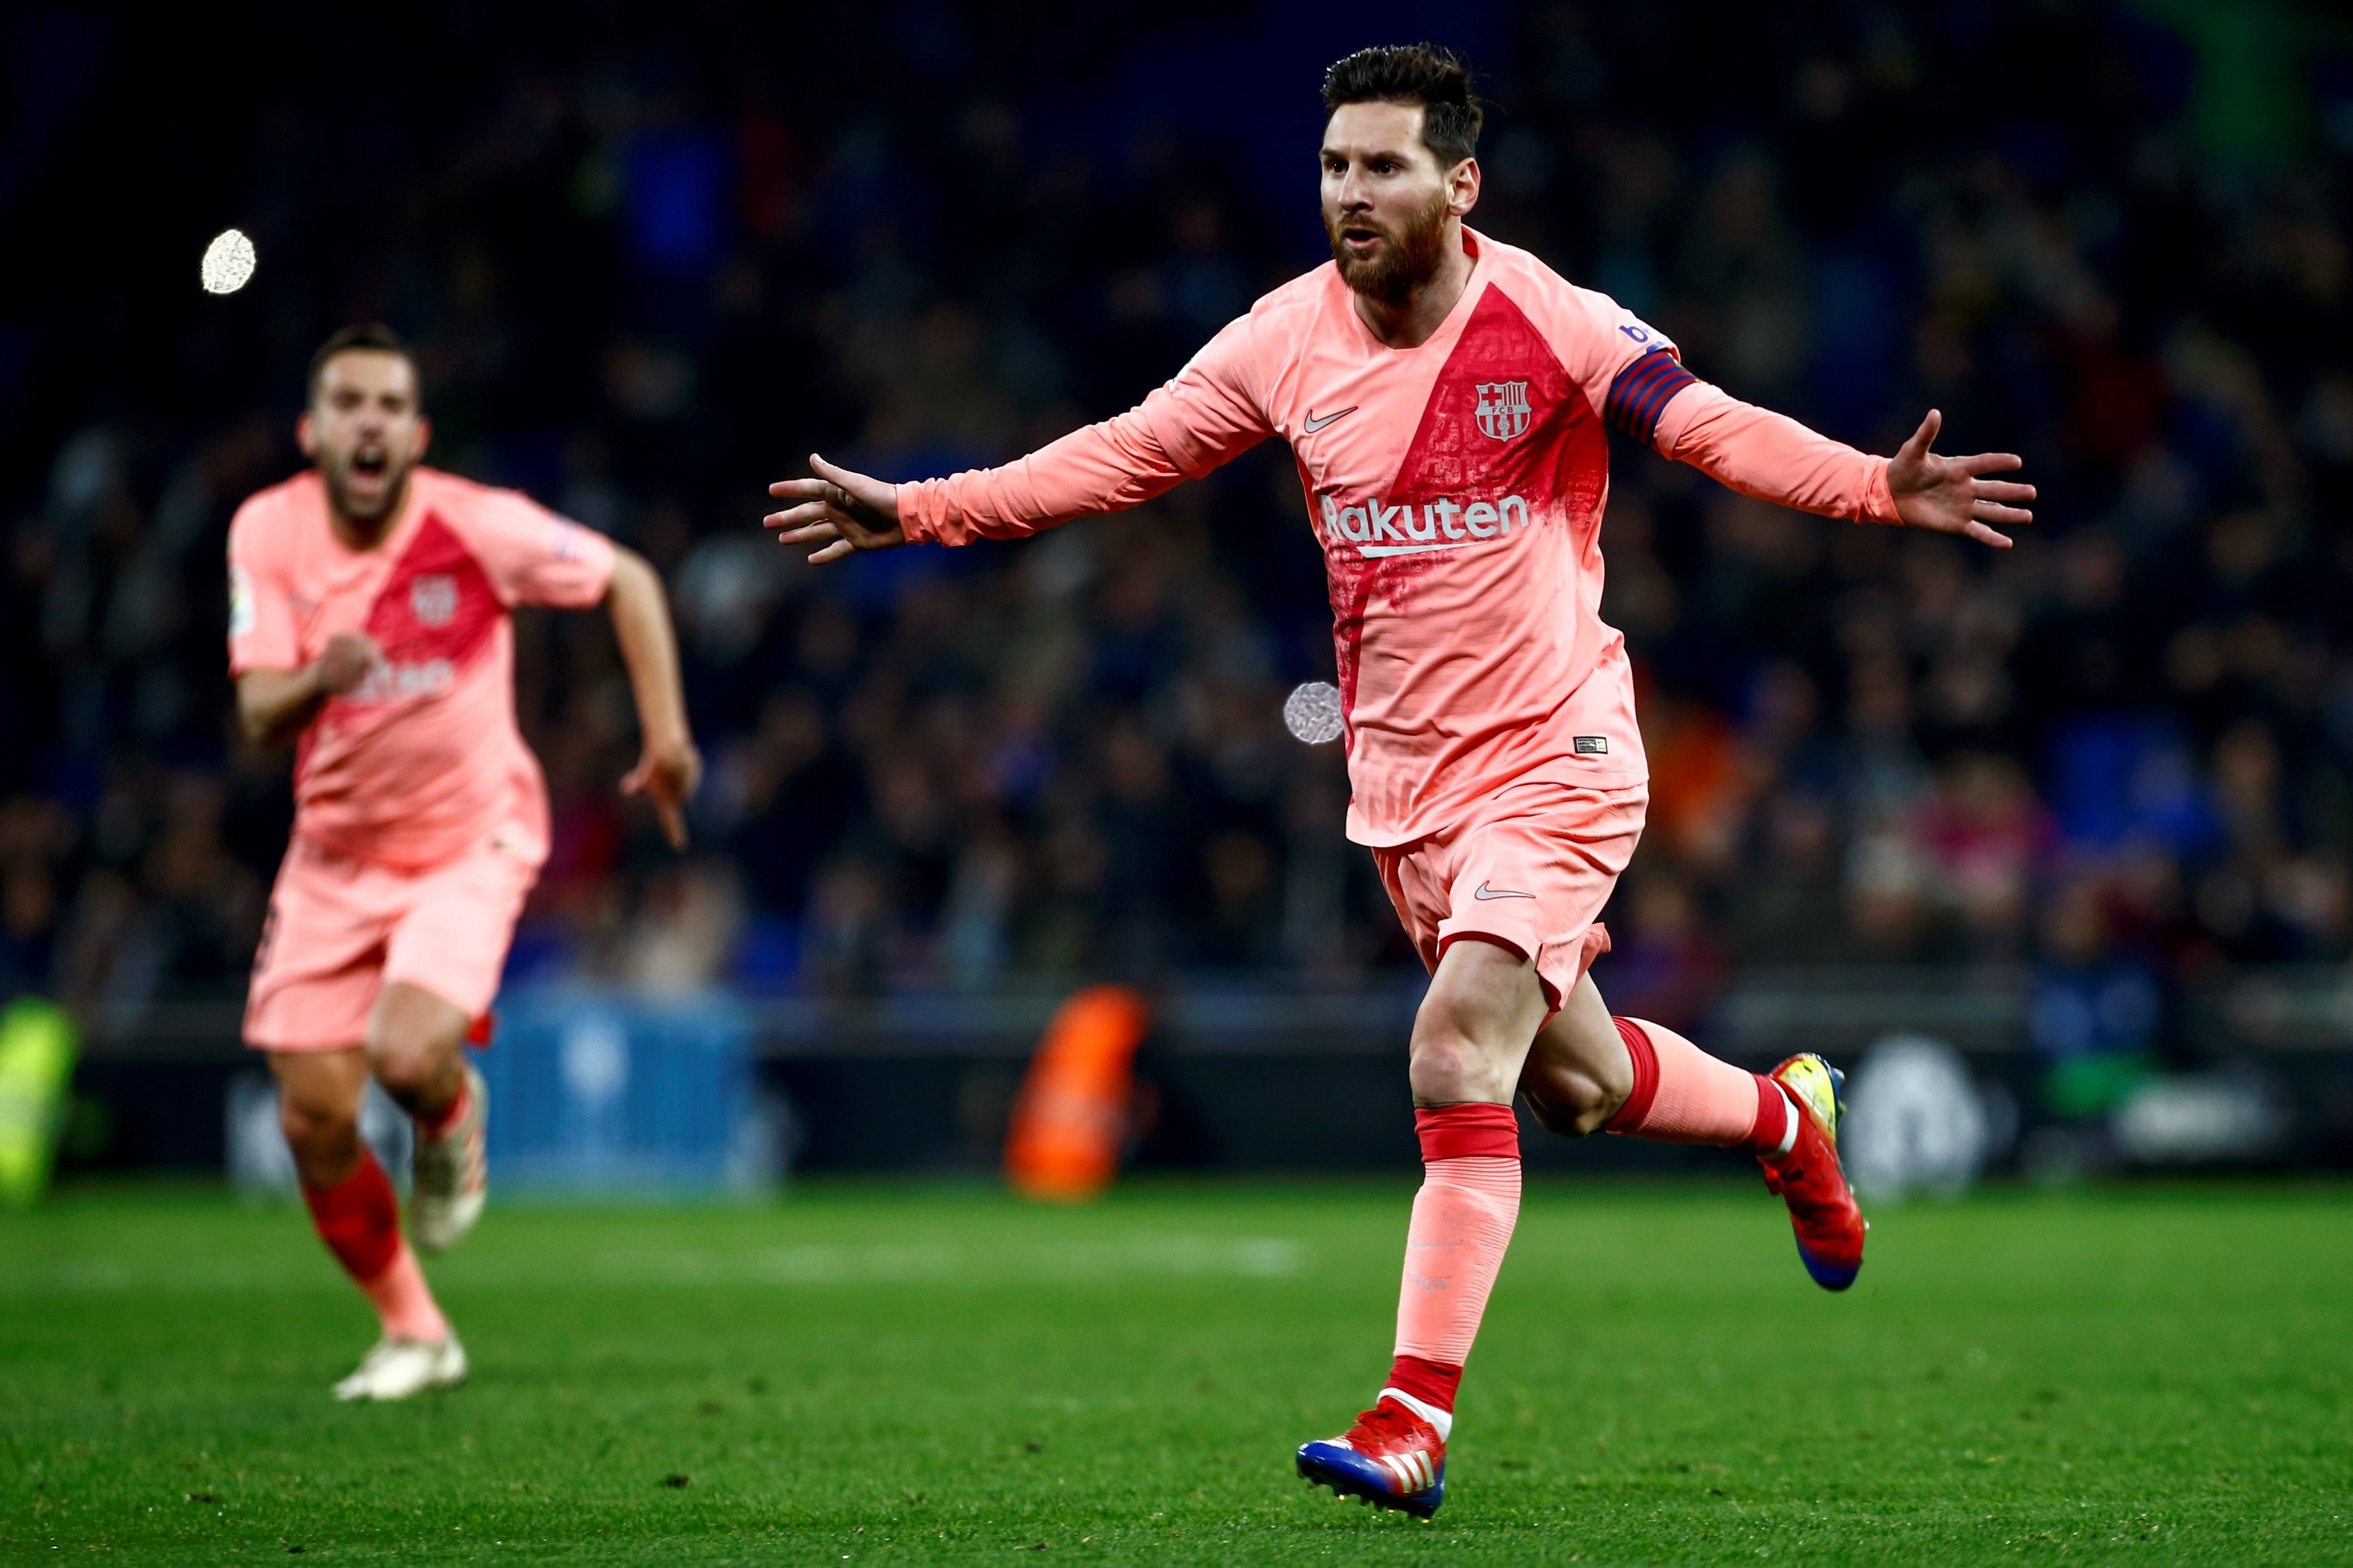 El món del futbol es rendeix a Messi